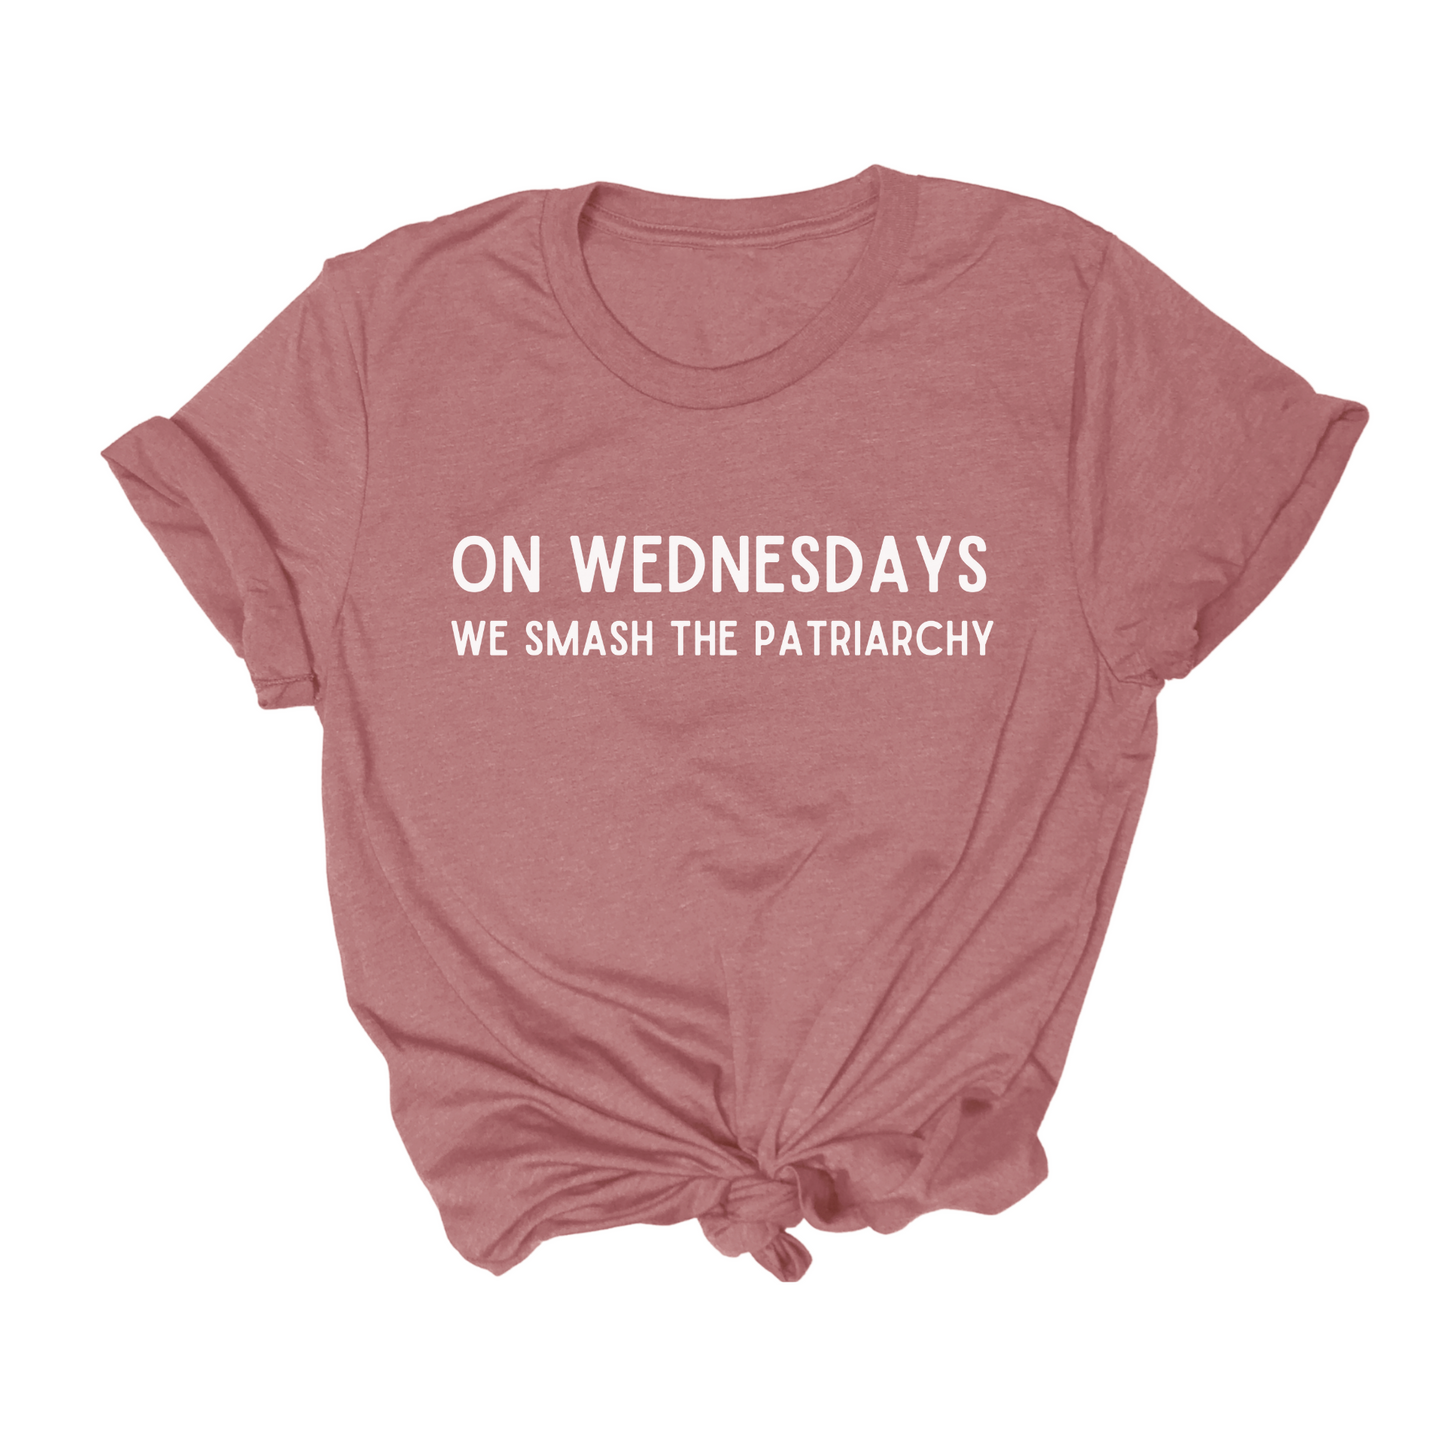 "On Wednesdays We Smash The Patriarchy" Tee